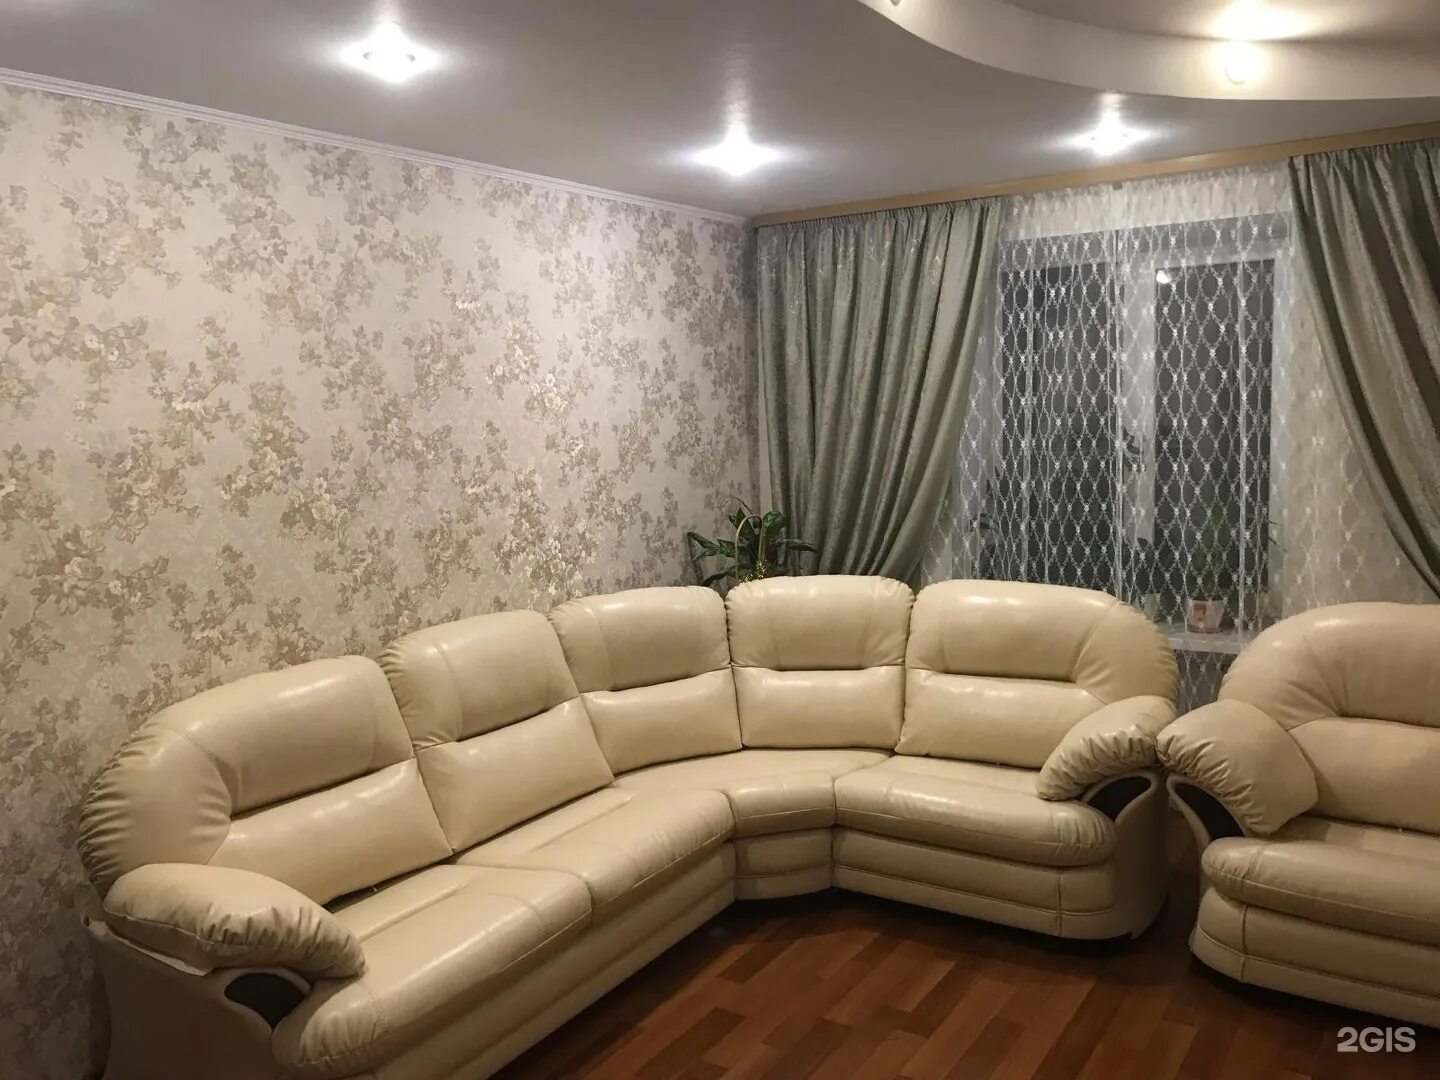 Дом диванов новосибирск. Купить диван и кресло на Левобережке в Новосибирске.